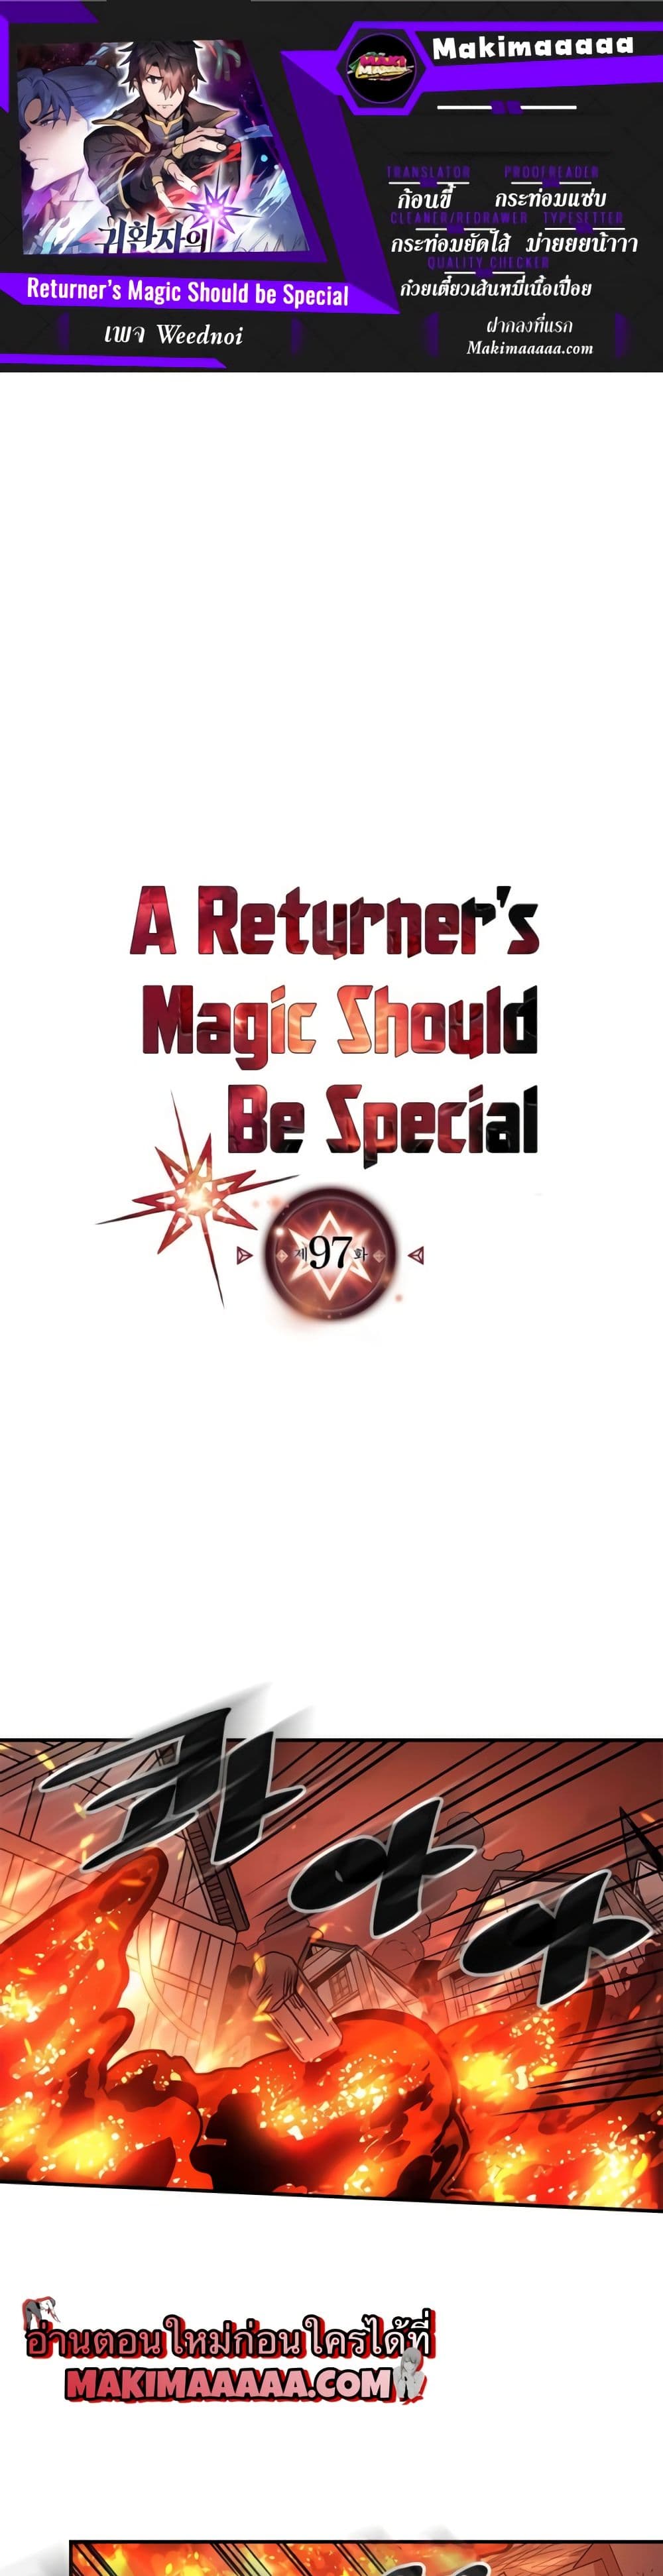 A Returner's Magic Should Be Special 97-97